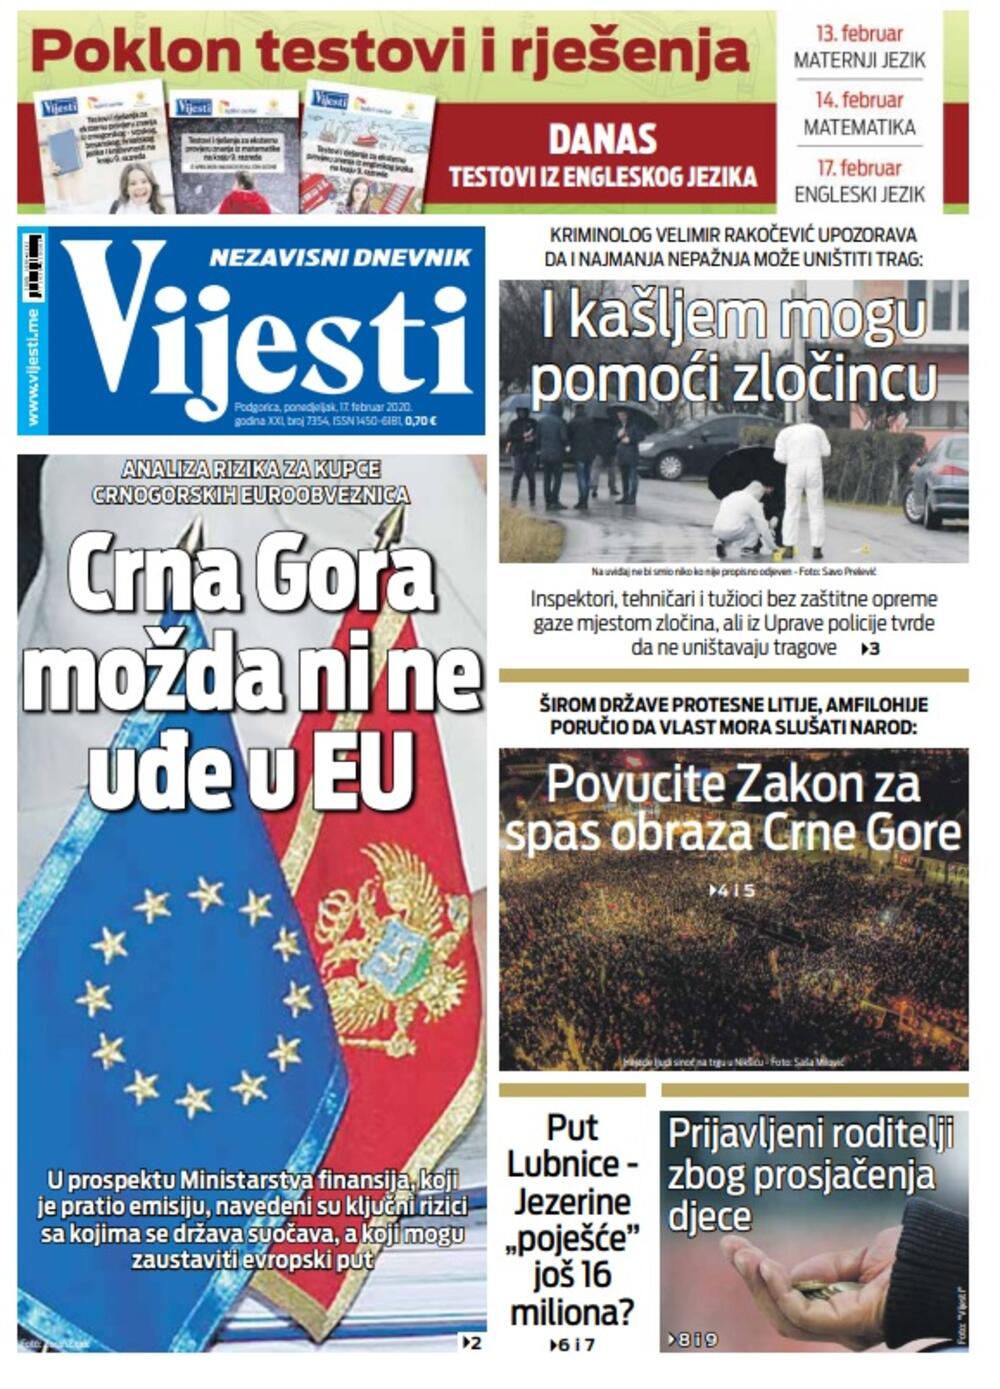 Naslovna strana "Vijesti" za 17. februar 2020. godine, Foto: "Vijesti"